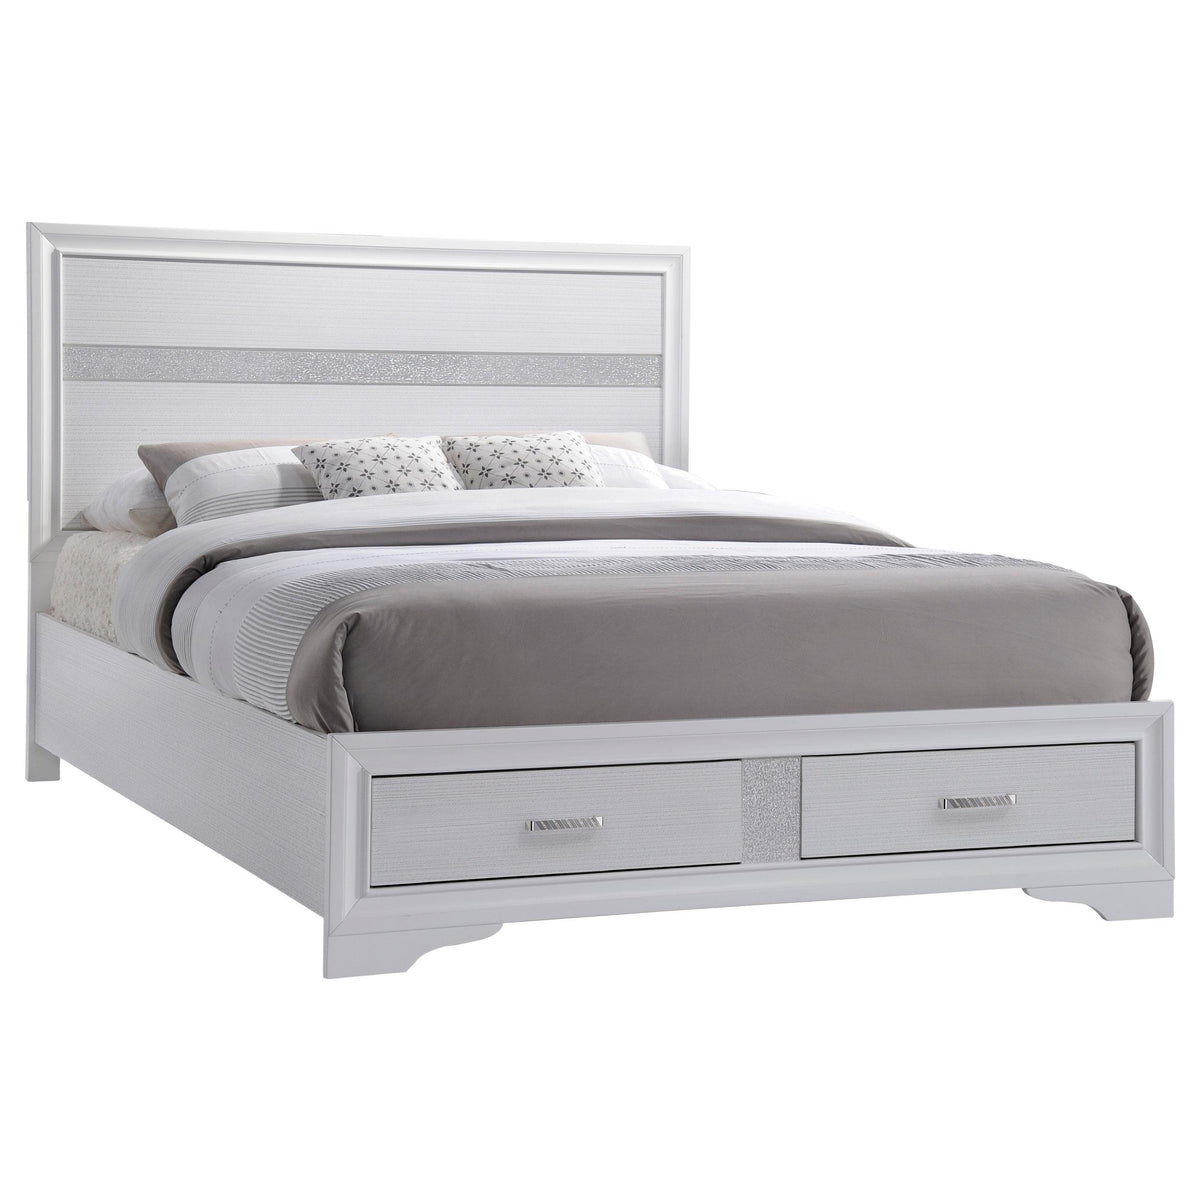 Miranda California King 2-drawer Storage Bed White  Las Vegas Furniture Stores